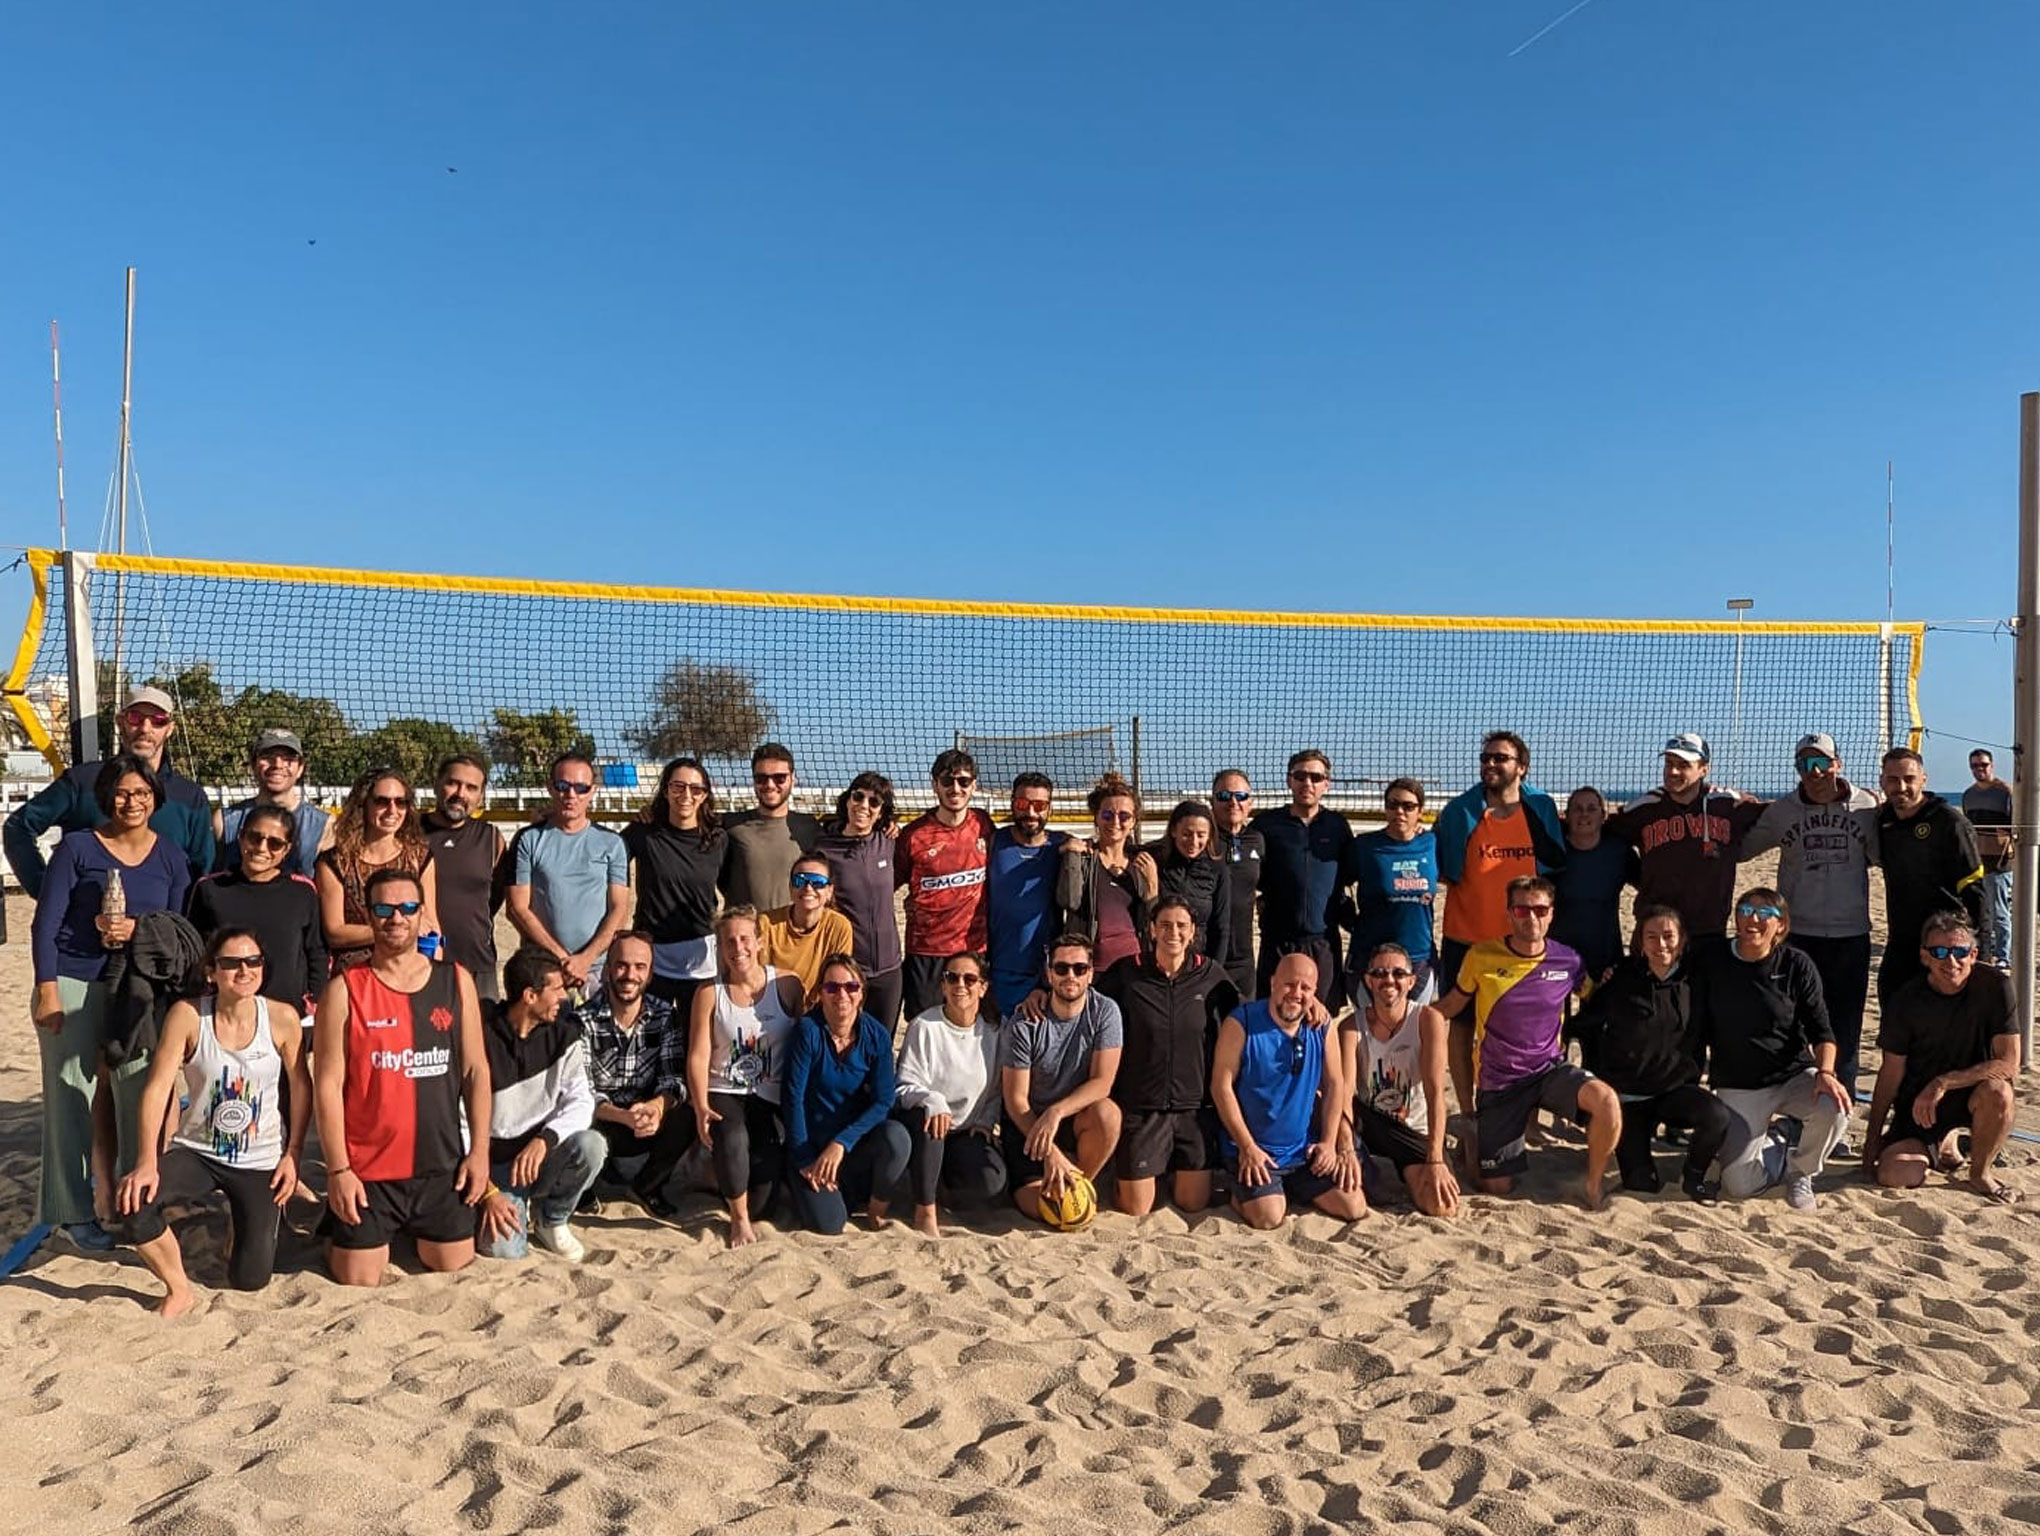 Campionat de vòlei platja al Club Nàutic El Masnou - 2023, club nàutic el masnou, cnem, vòlei platja - Campionat de vòlei platja